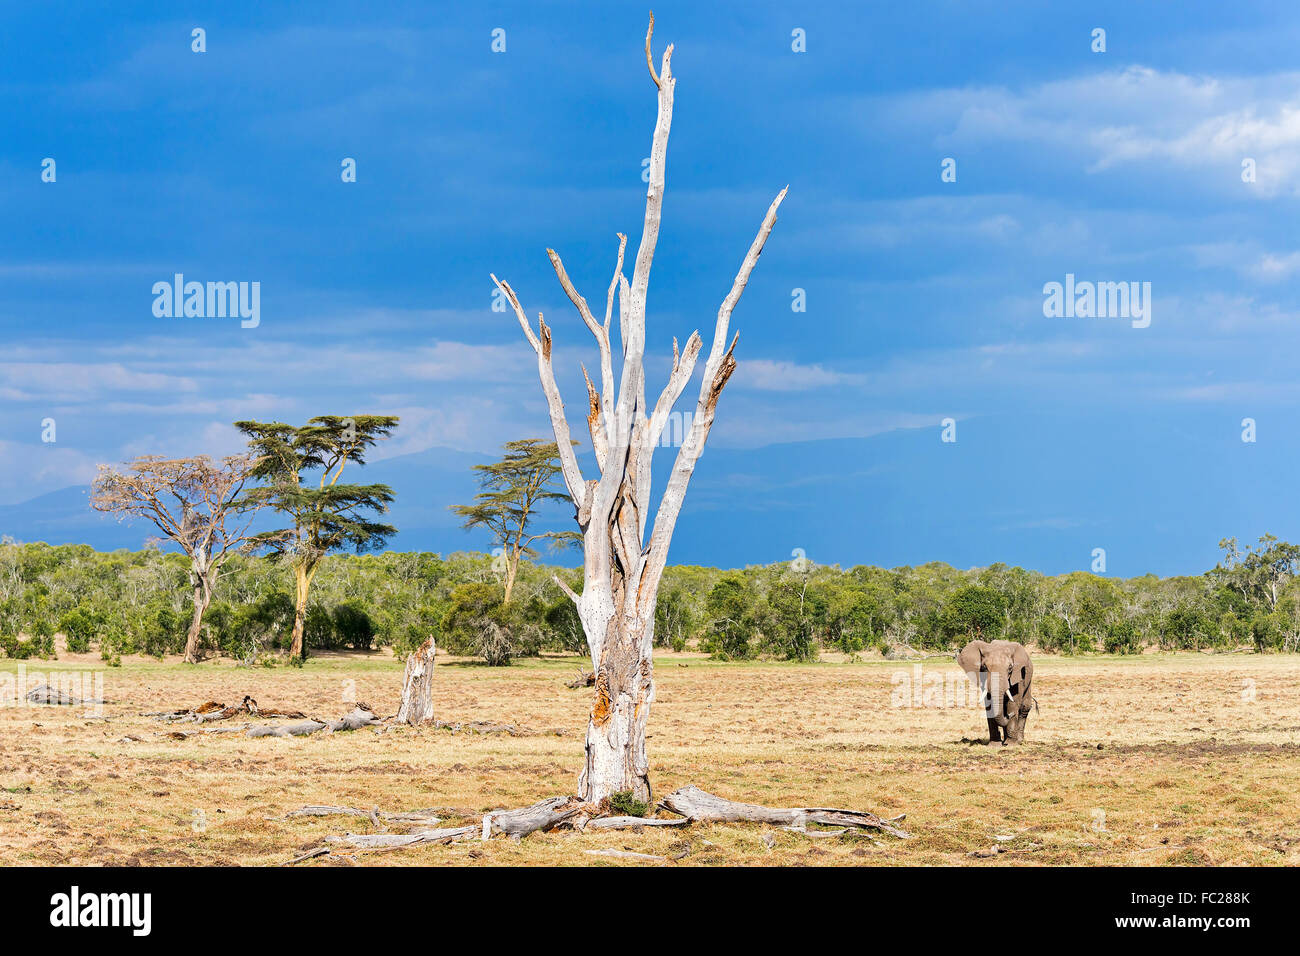 Bush elefante africano (Loxodonta africana), el paisaje con árbol muerto, Ol Pejeta Reserva, Kenya Foto de stock